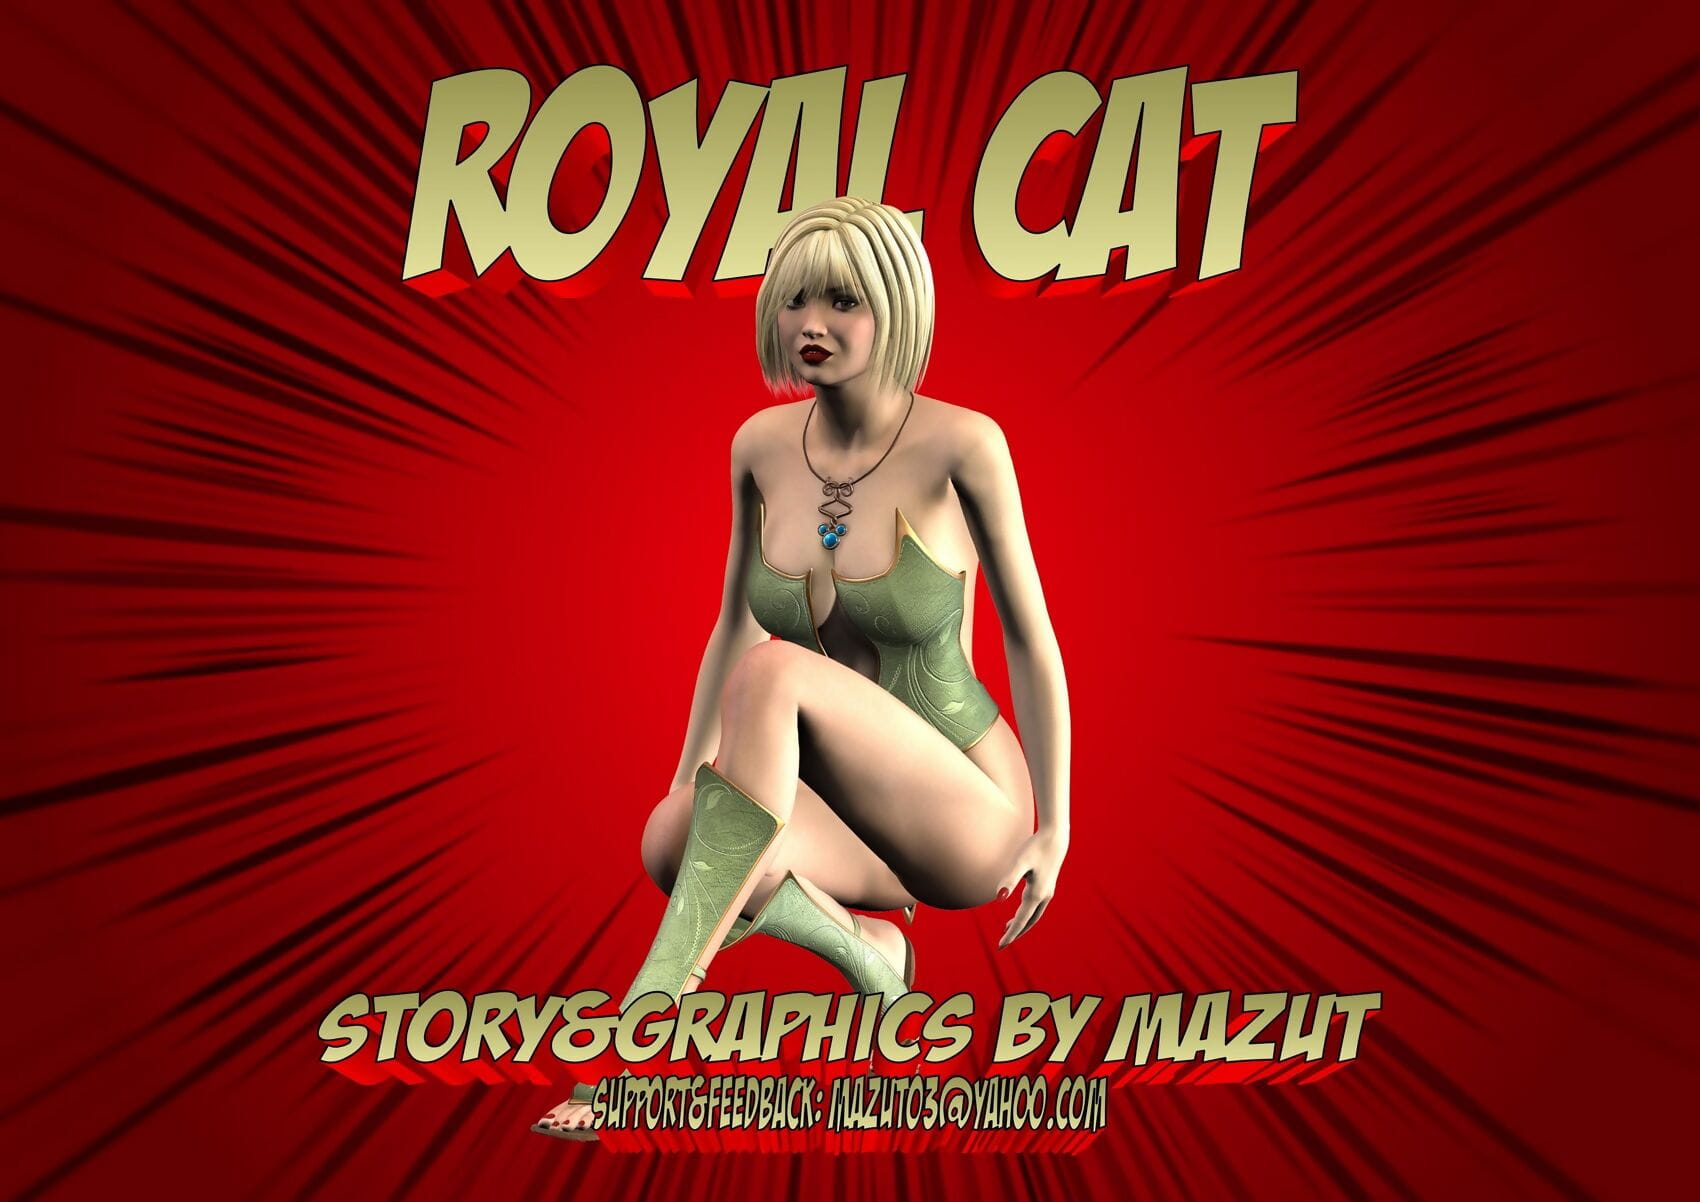 Mazut – Royal Cat page 1